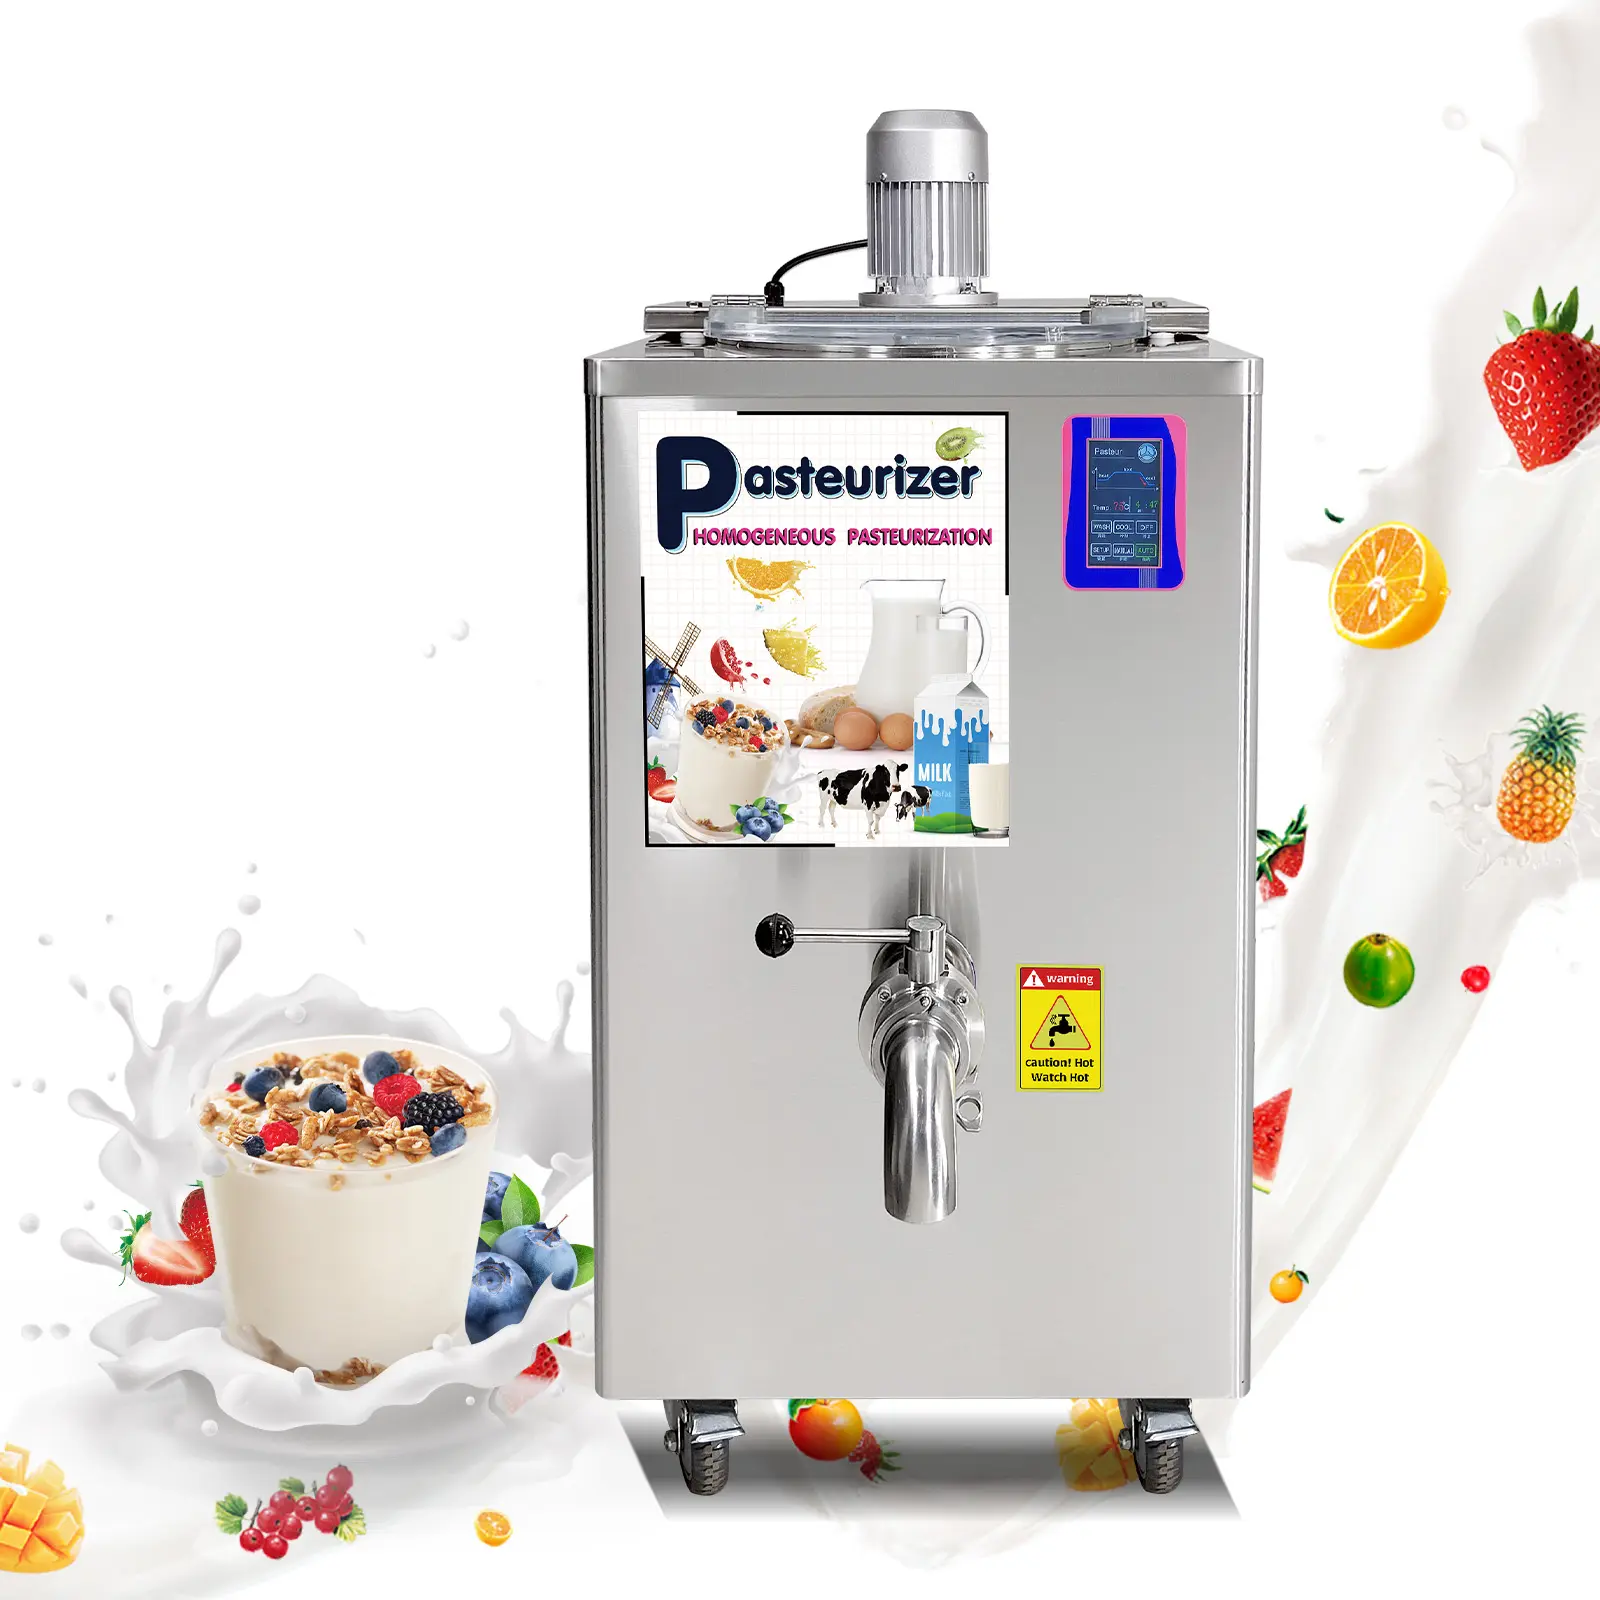 Ce itália sorvete pasteurizador/pasteurizador pasteurização de alta pressão máquina/sorvete e leite pasteurizador máquina